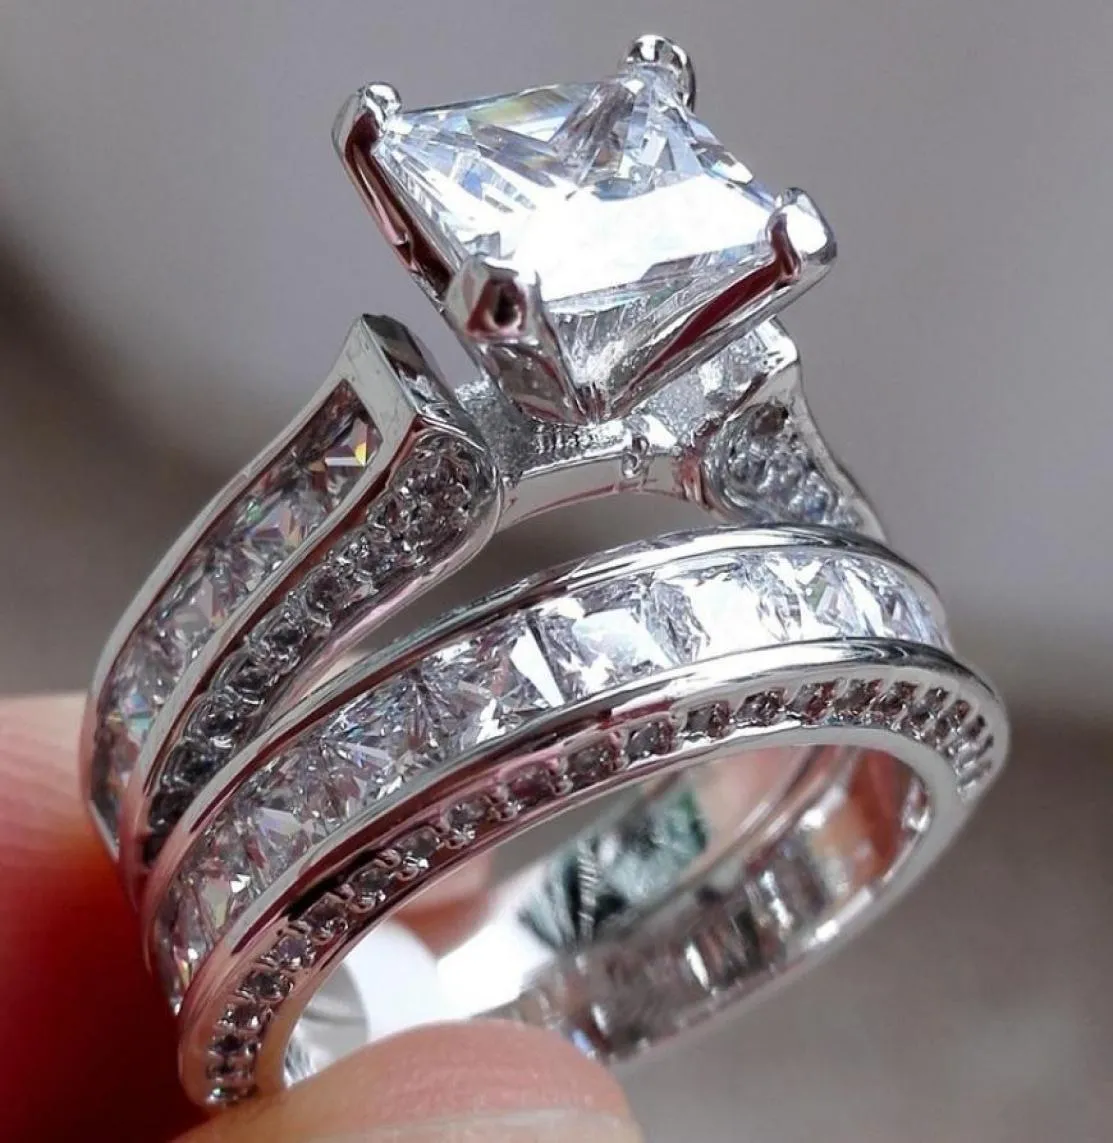 Tamanho de luxo 5678910 joias 10kt ouro branco cheio topázio corte princesa conjunto de anel de casamento de diamante simulado presente AB18467420756